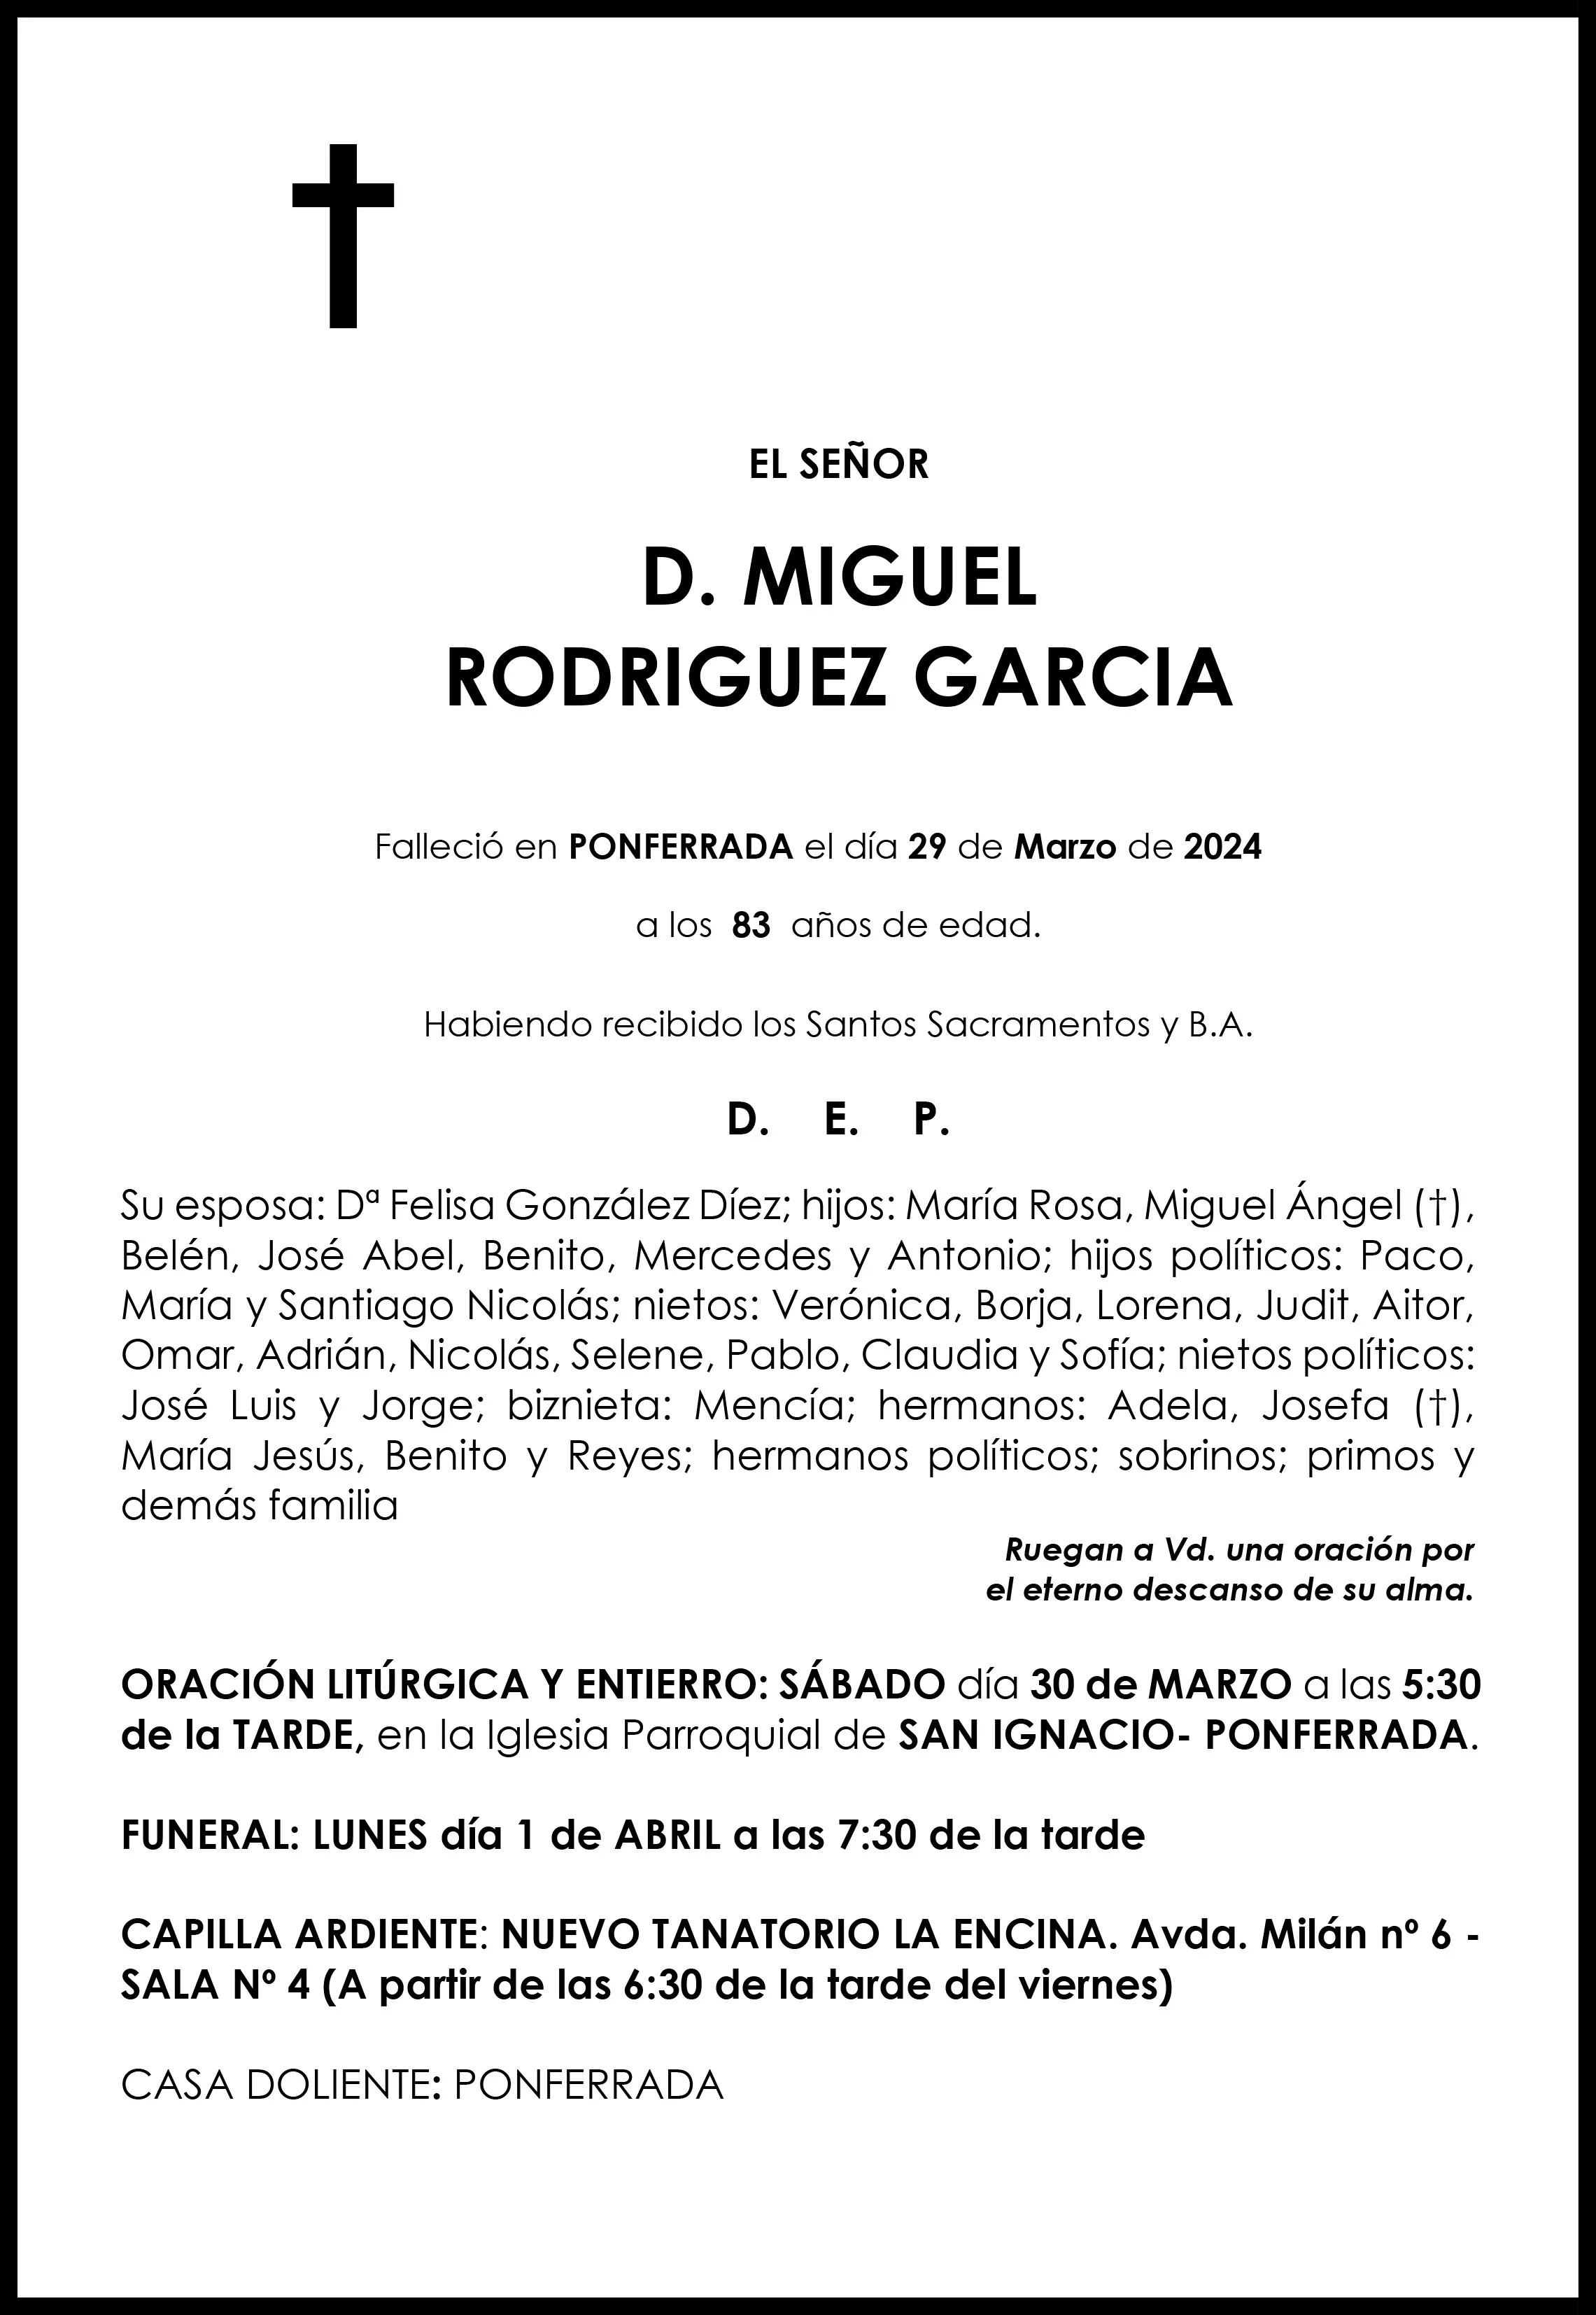 MIGUEL RODRIGUEZ GARCIA